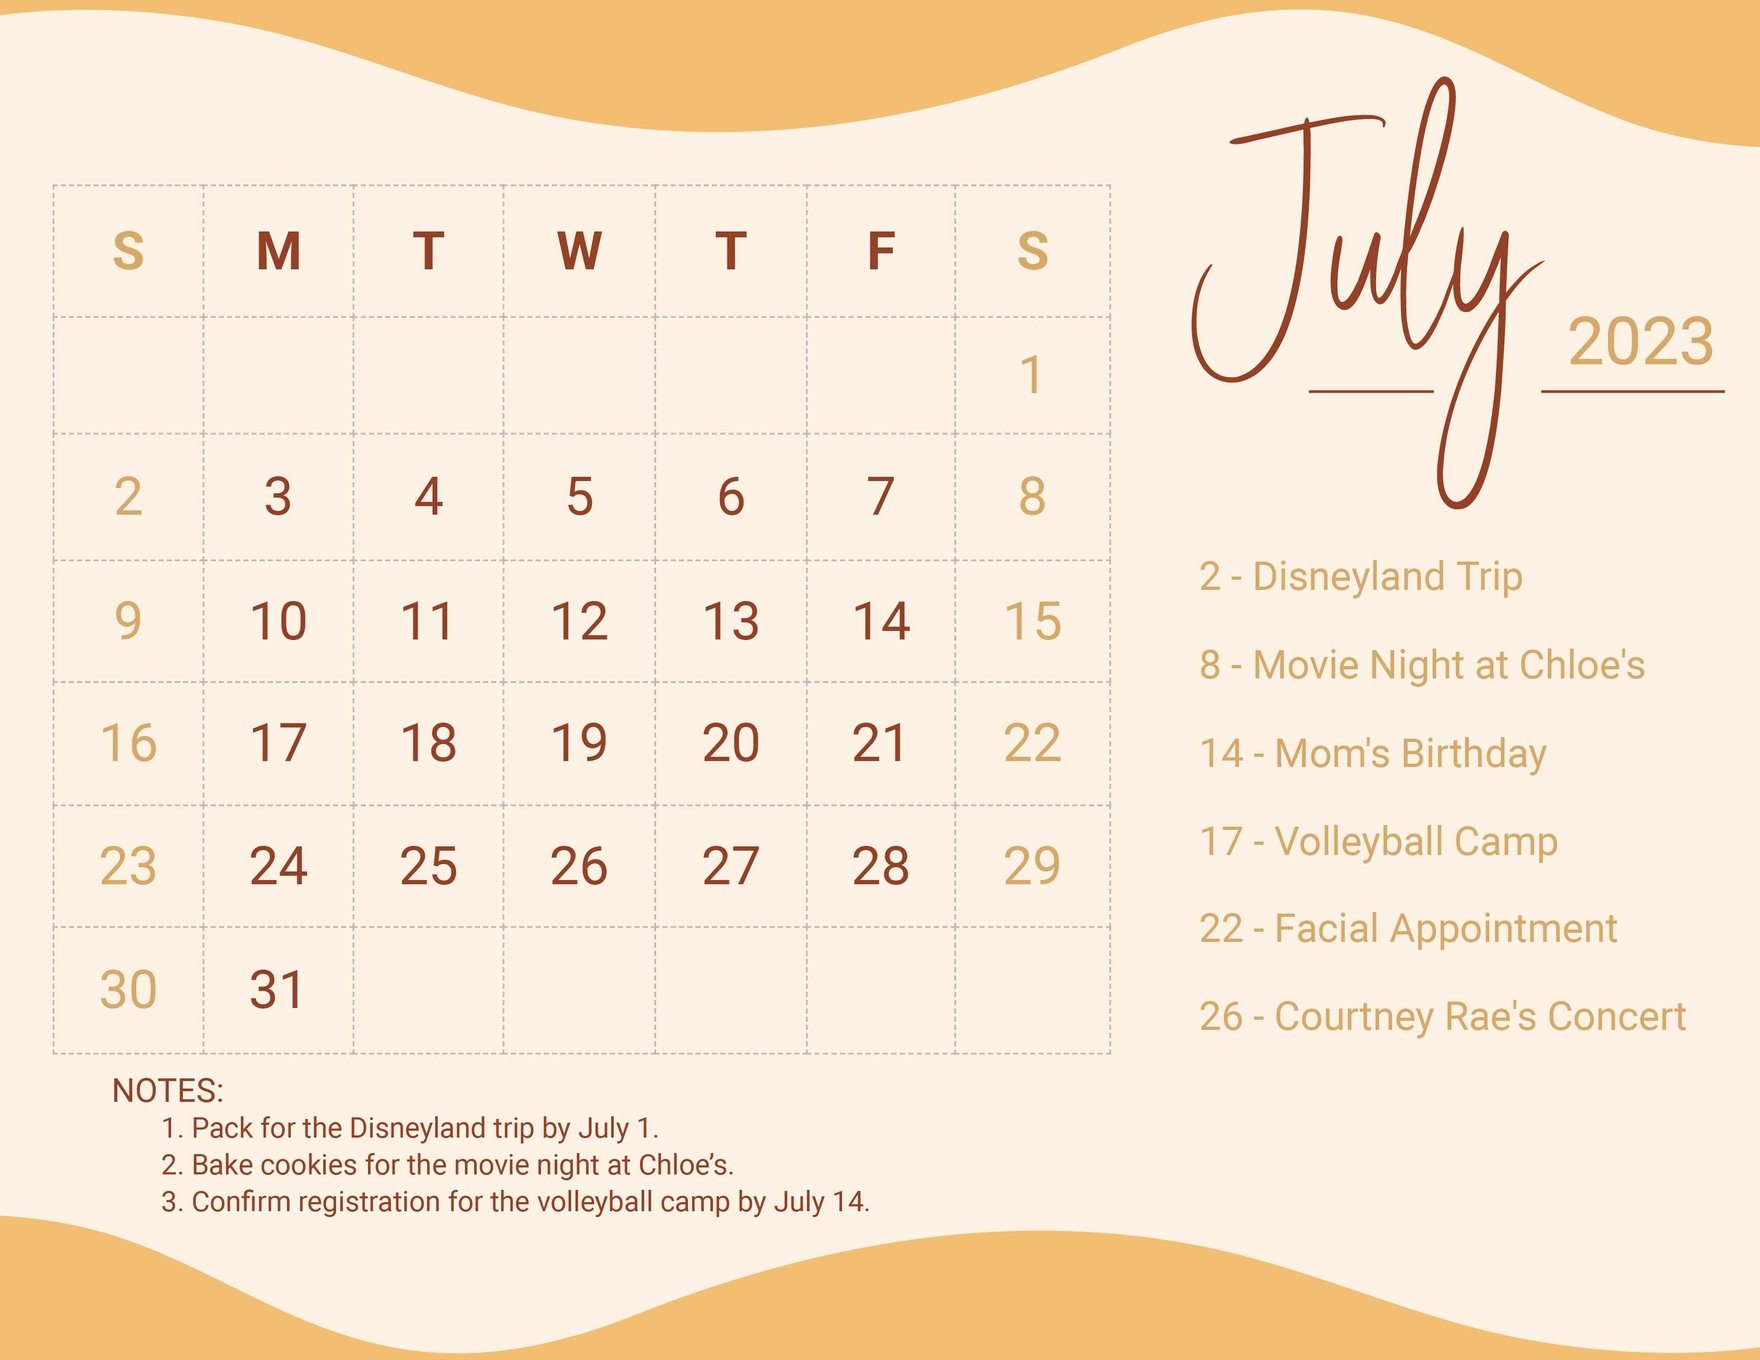 Free Calligraphy July 2023 Calendar in Word, Google Docs, Excel, Google Sheets, Illustrator, EPS, SVG, JPG